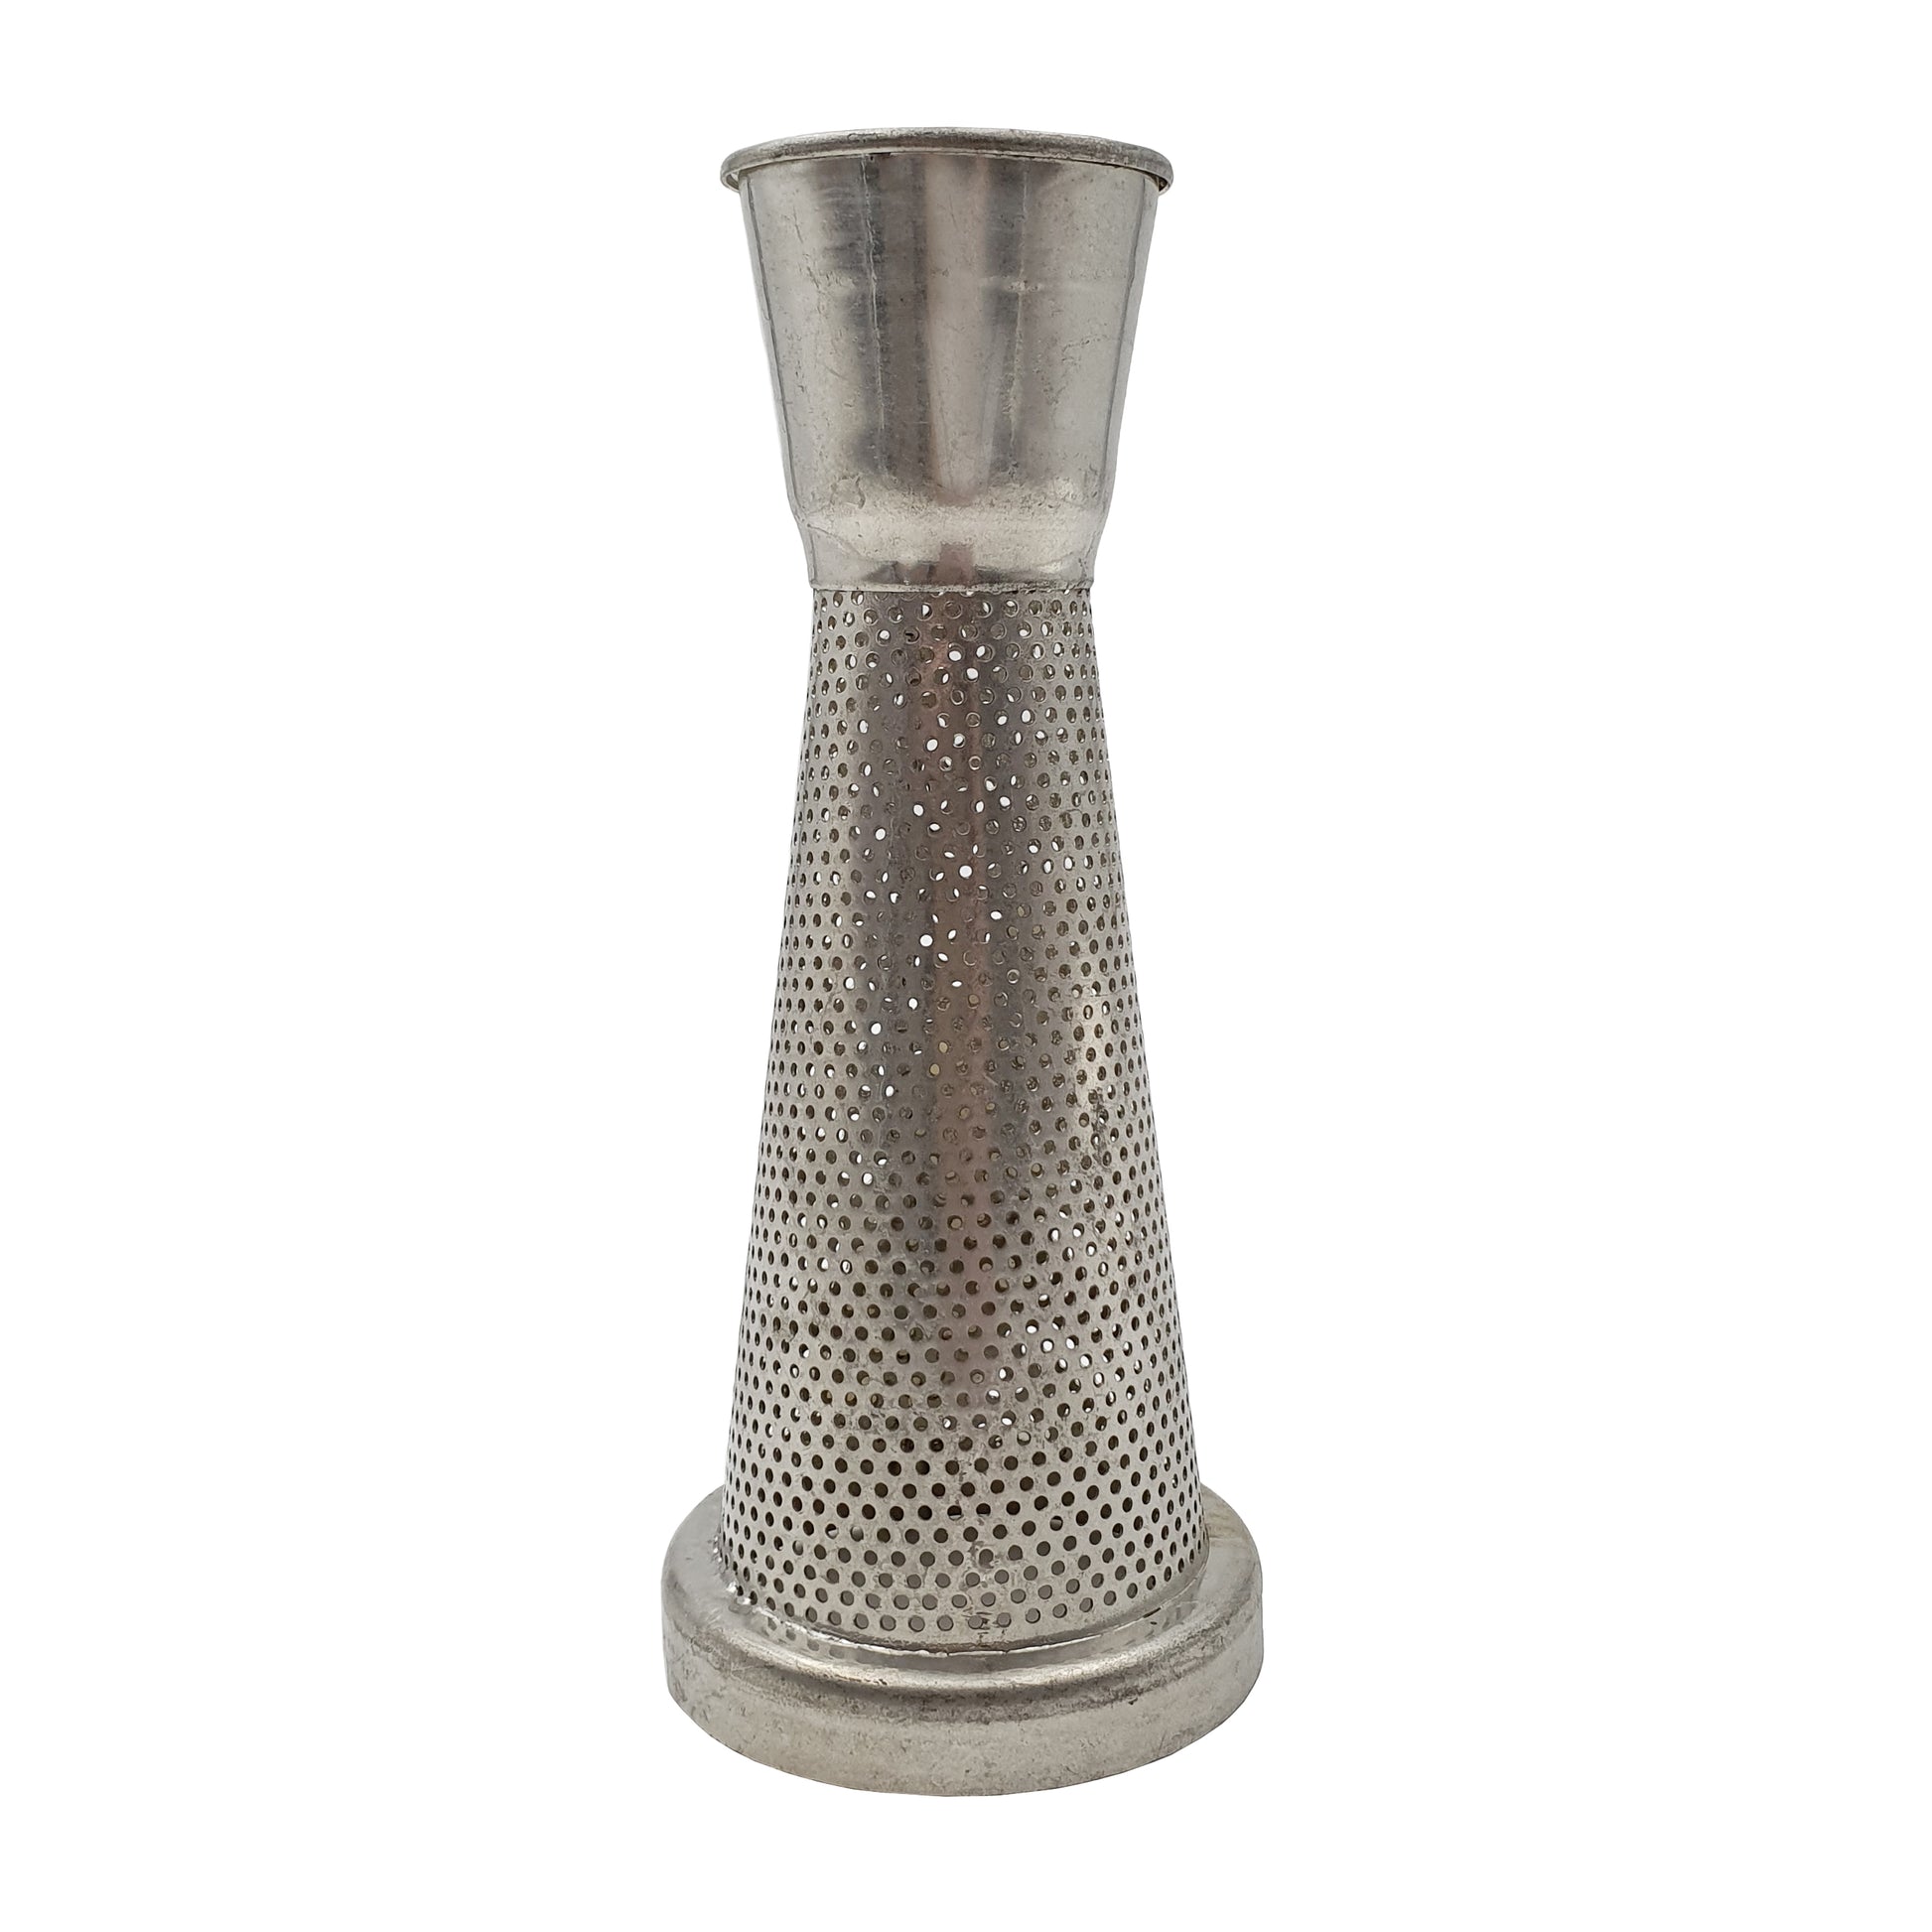 cast iron perforated cone for passata machine